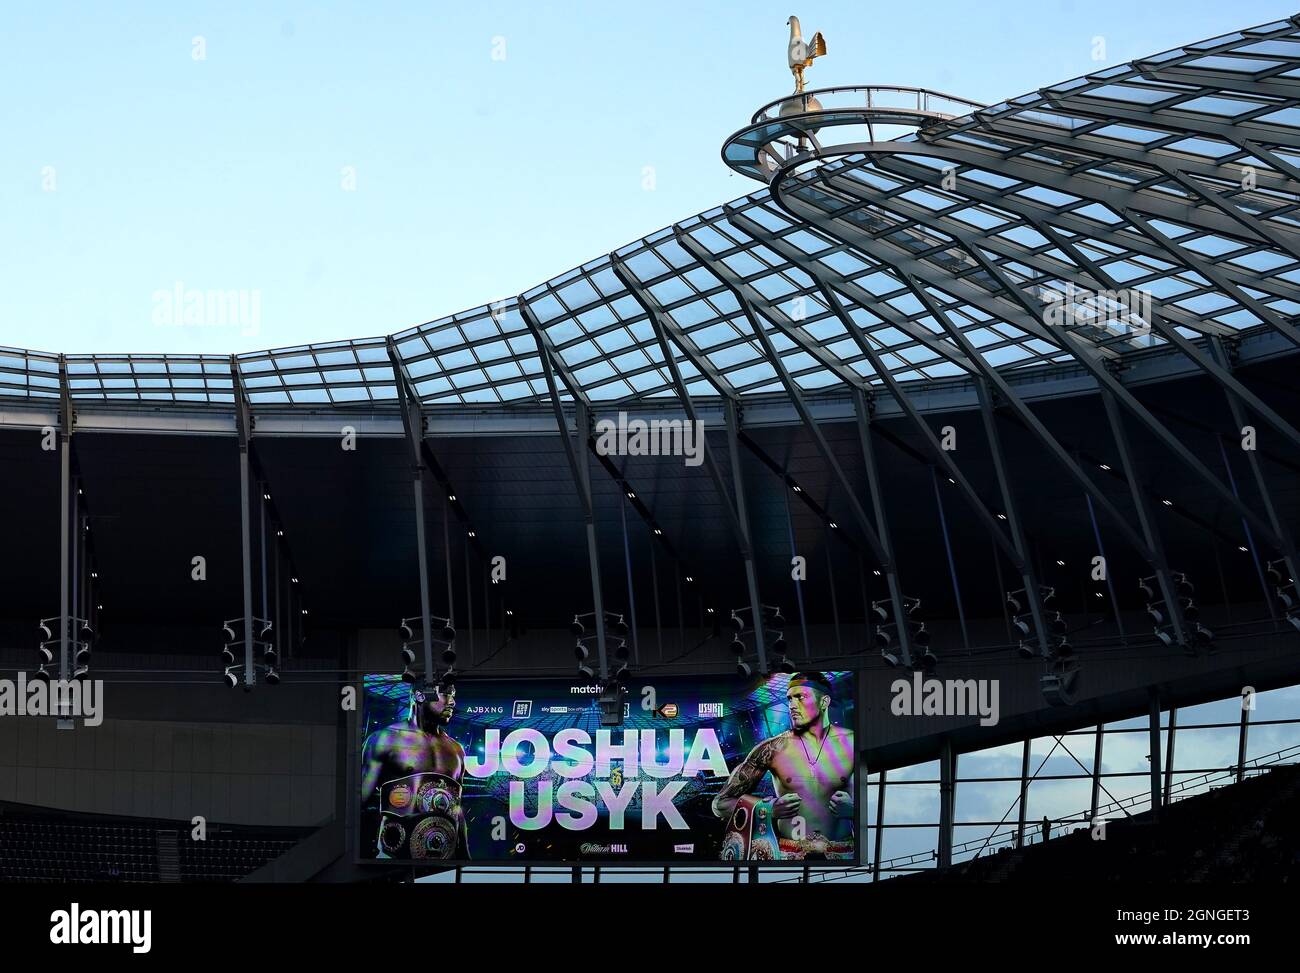 Vista generale dall'interno del Tottenham Hotspur Stadium. Data foto: Sabato 25 settembre 2021. Foto Stock